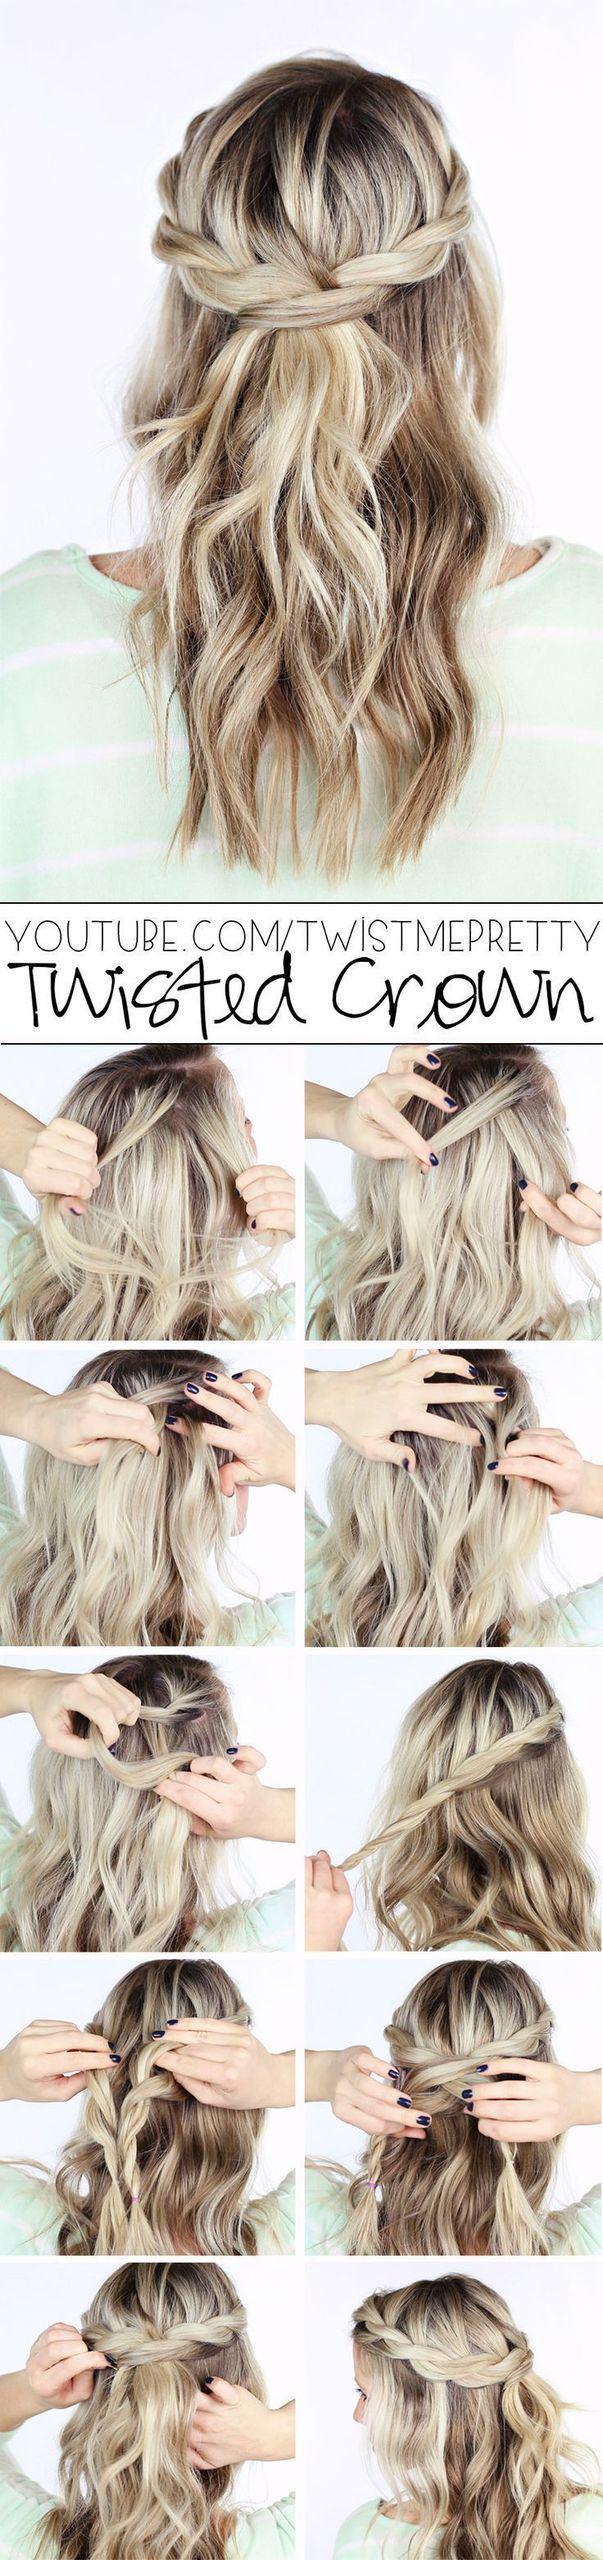 รูปภาพ:http://www.deerpearlflowers.com/wp-content/uploads/2015/03/DIY-Wedding-Hairstyle-Twisted-crown-braid-half-up-half-down-hairstyle.jpg